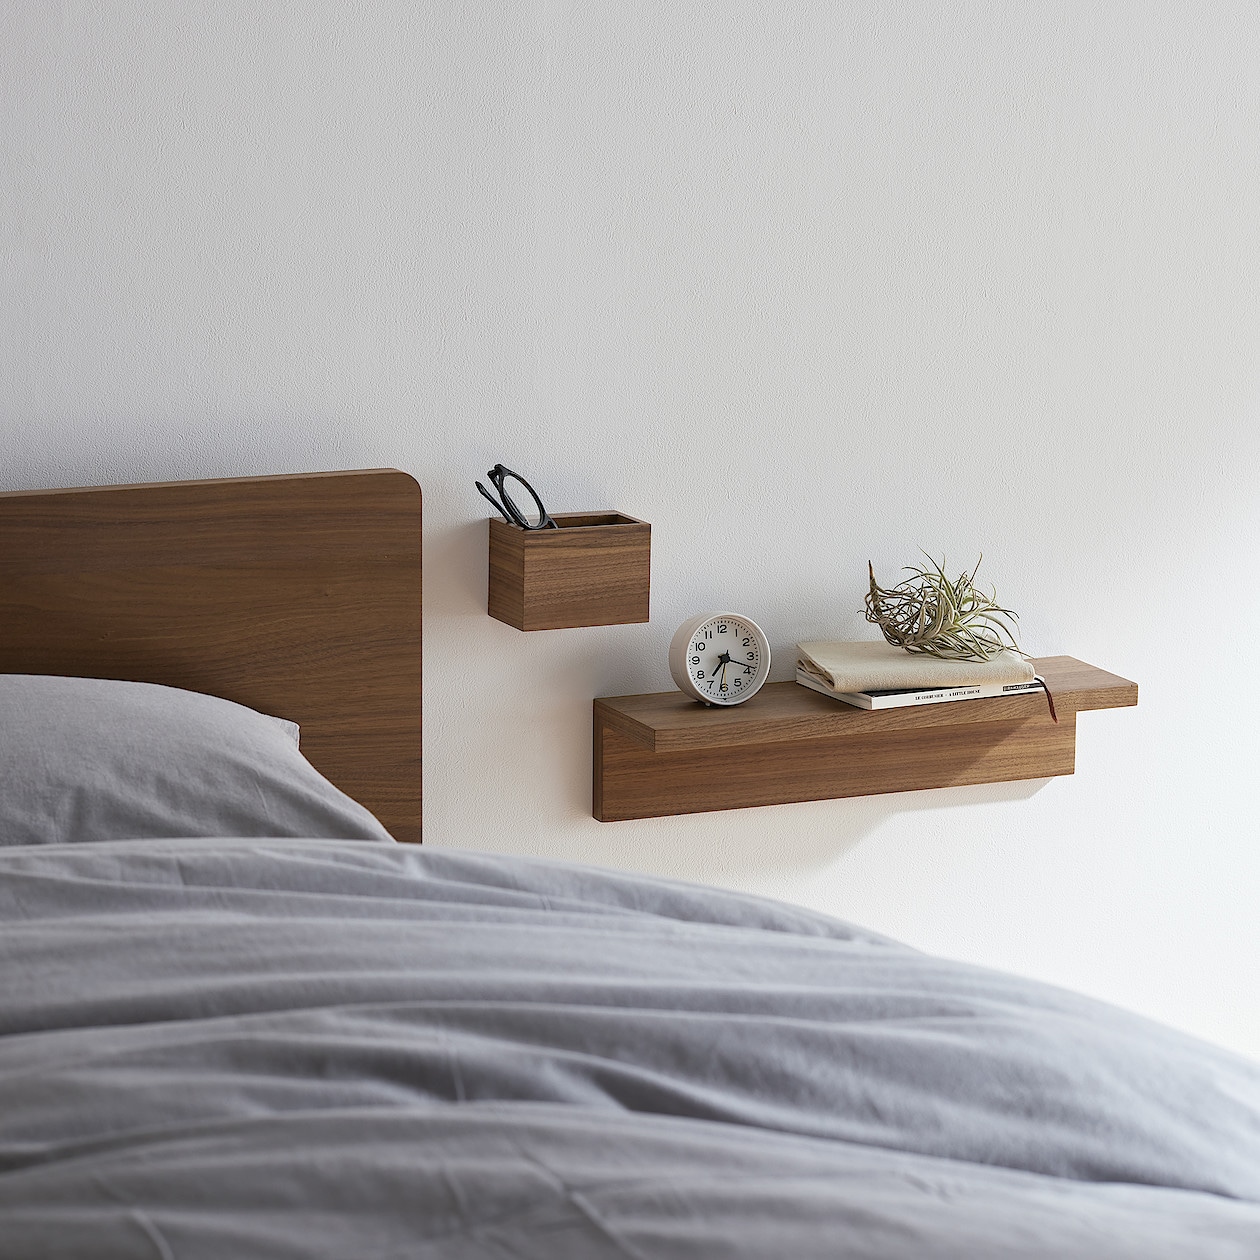 無印良品 壁に付けられる家具 箱 1マス オーク材 - 木製ラック・ウッド